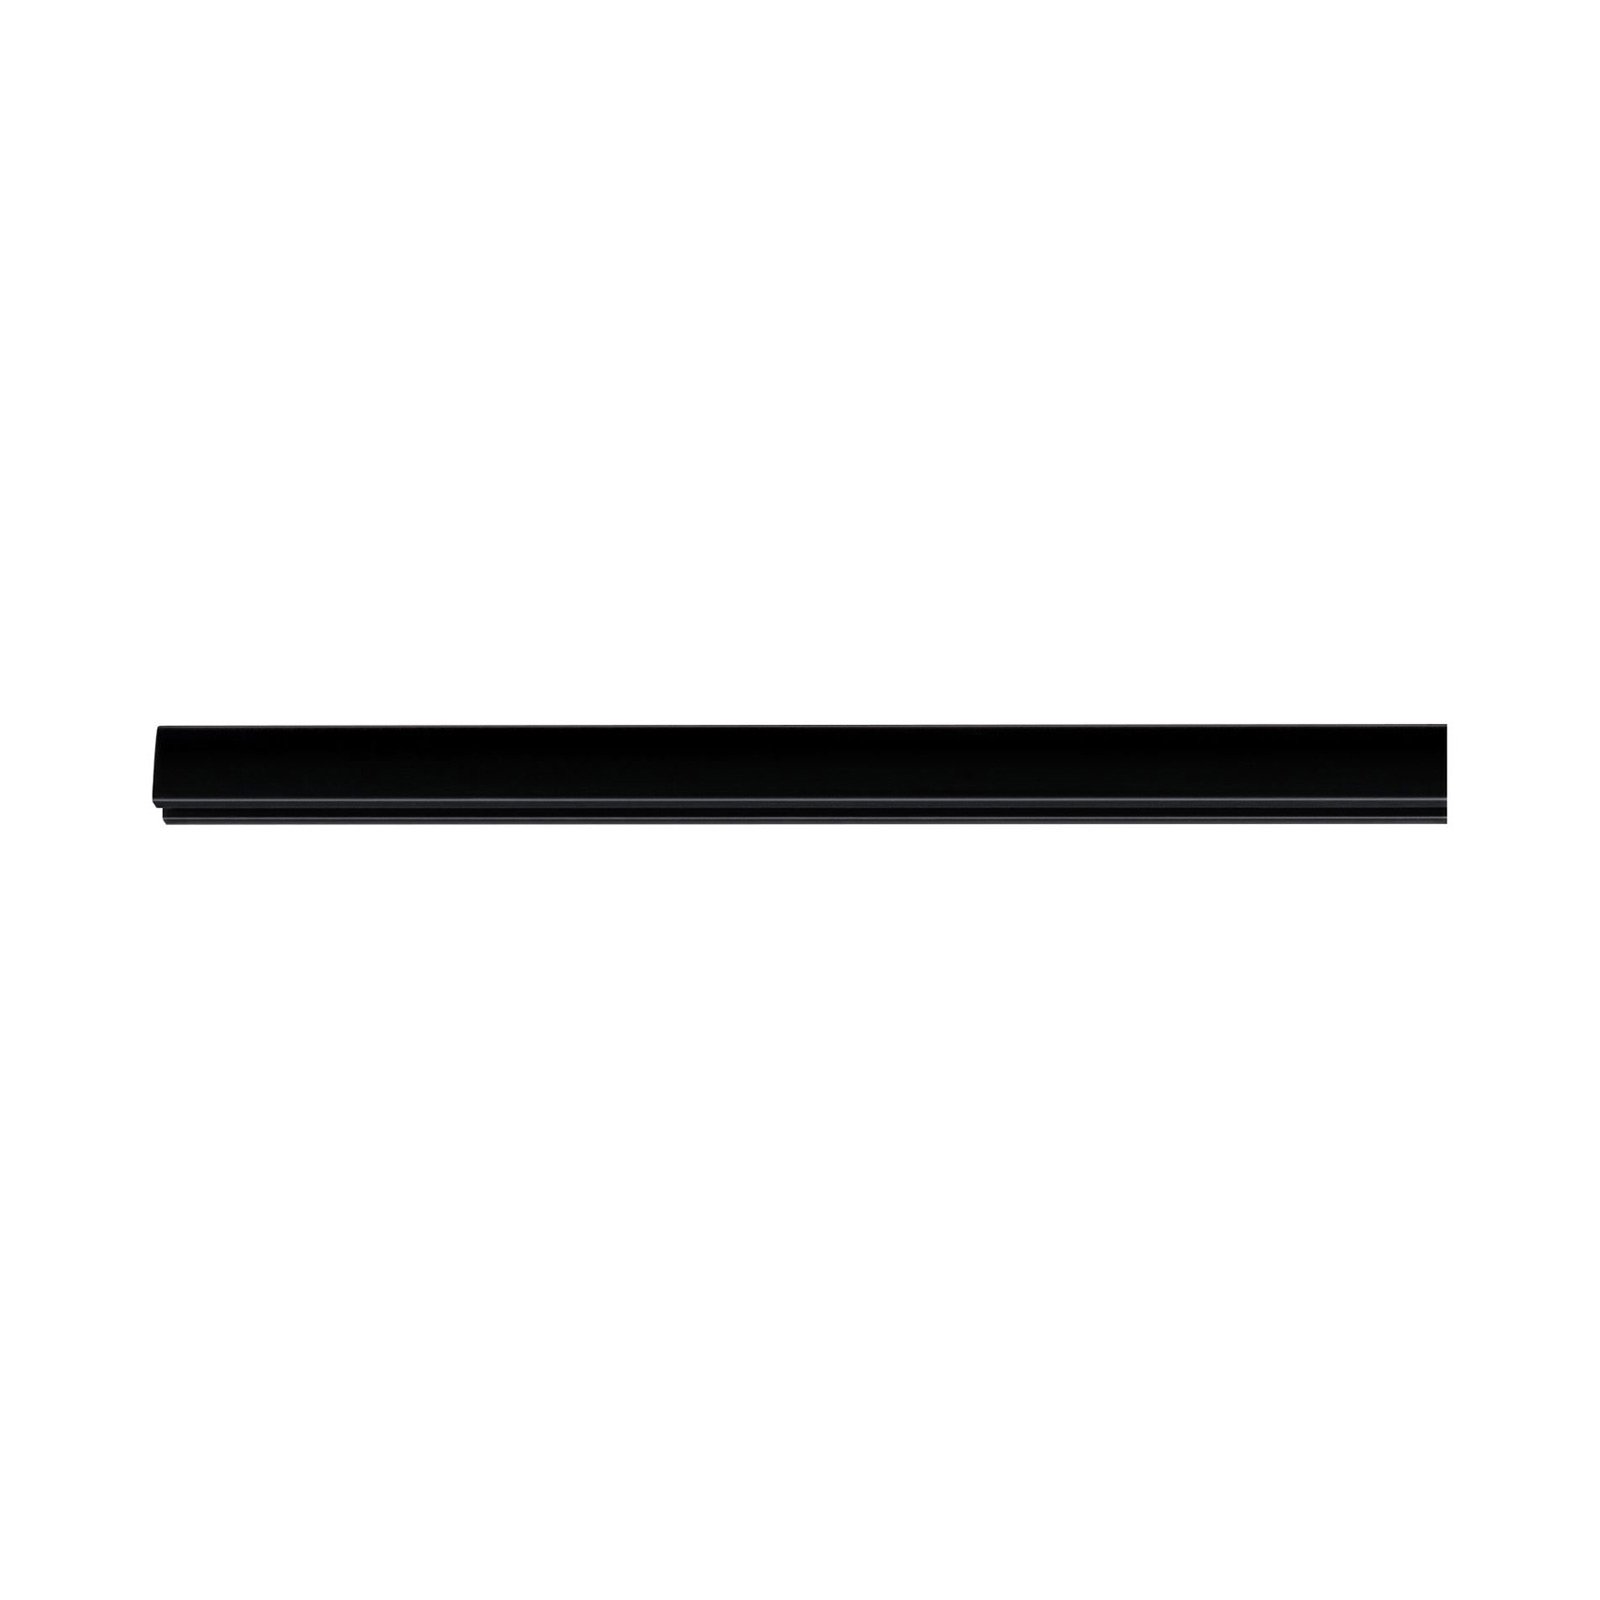 Paulmann Urail binario nero satinato, 50 cm